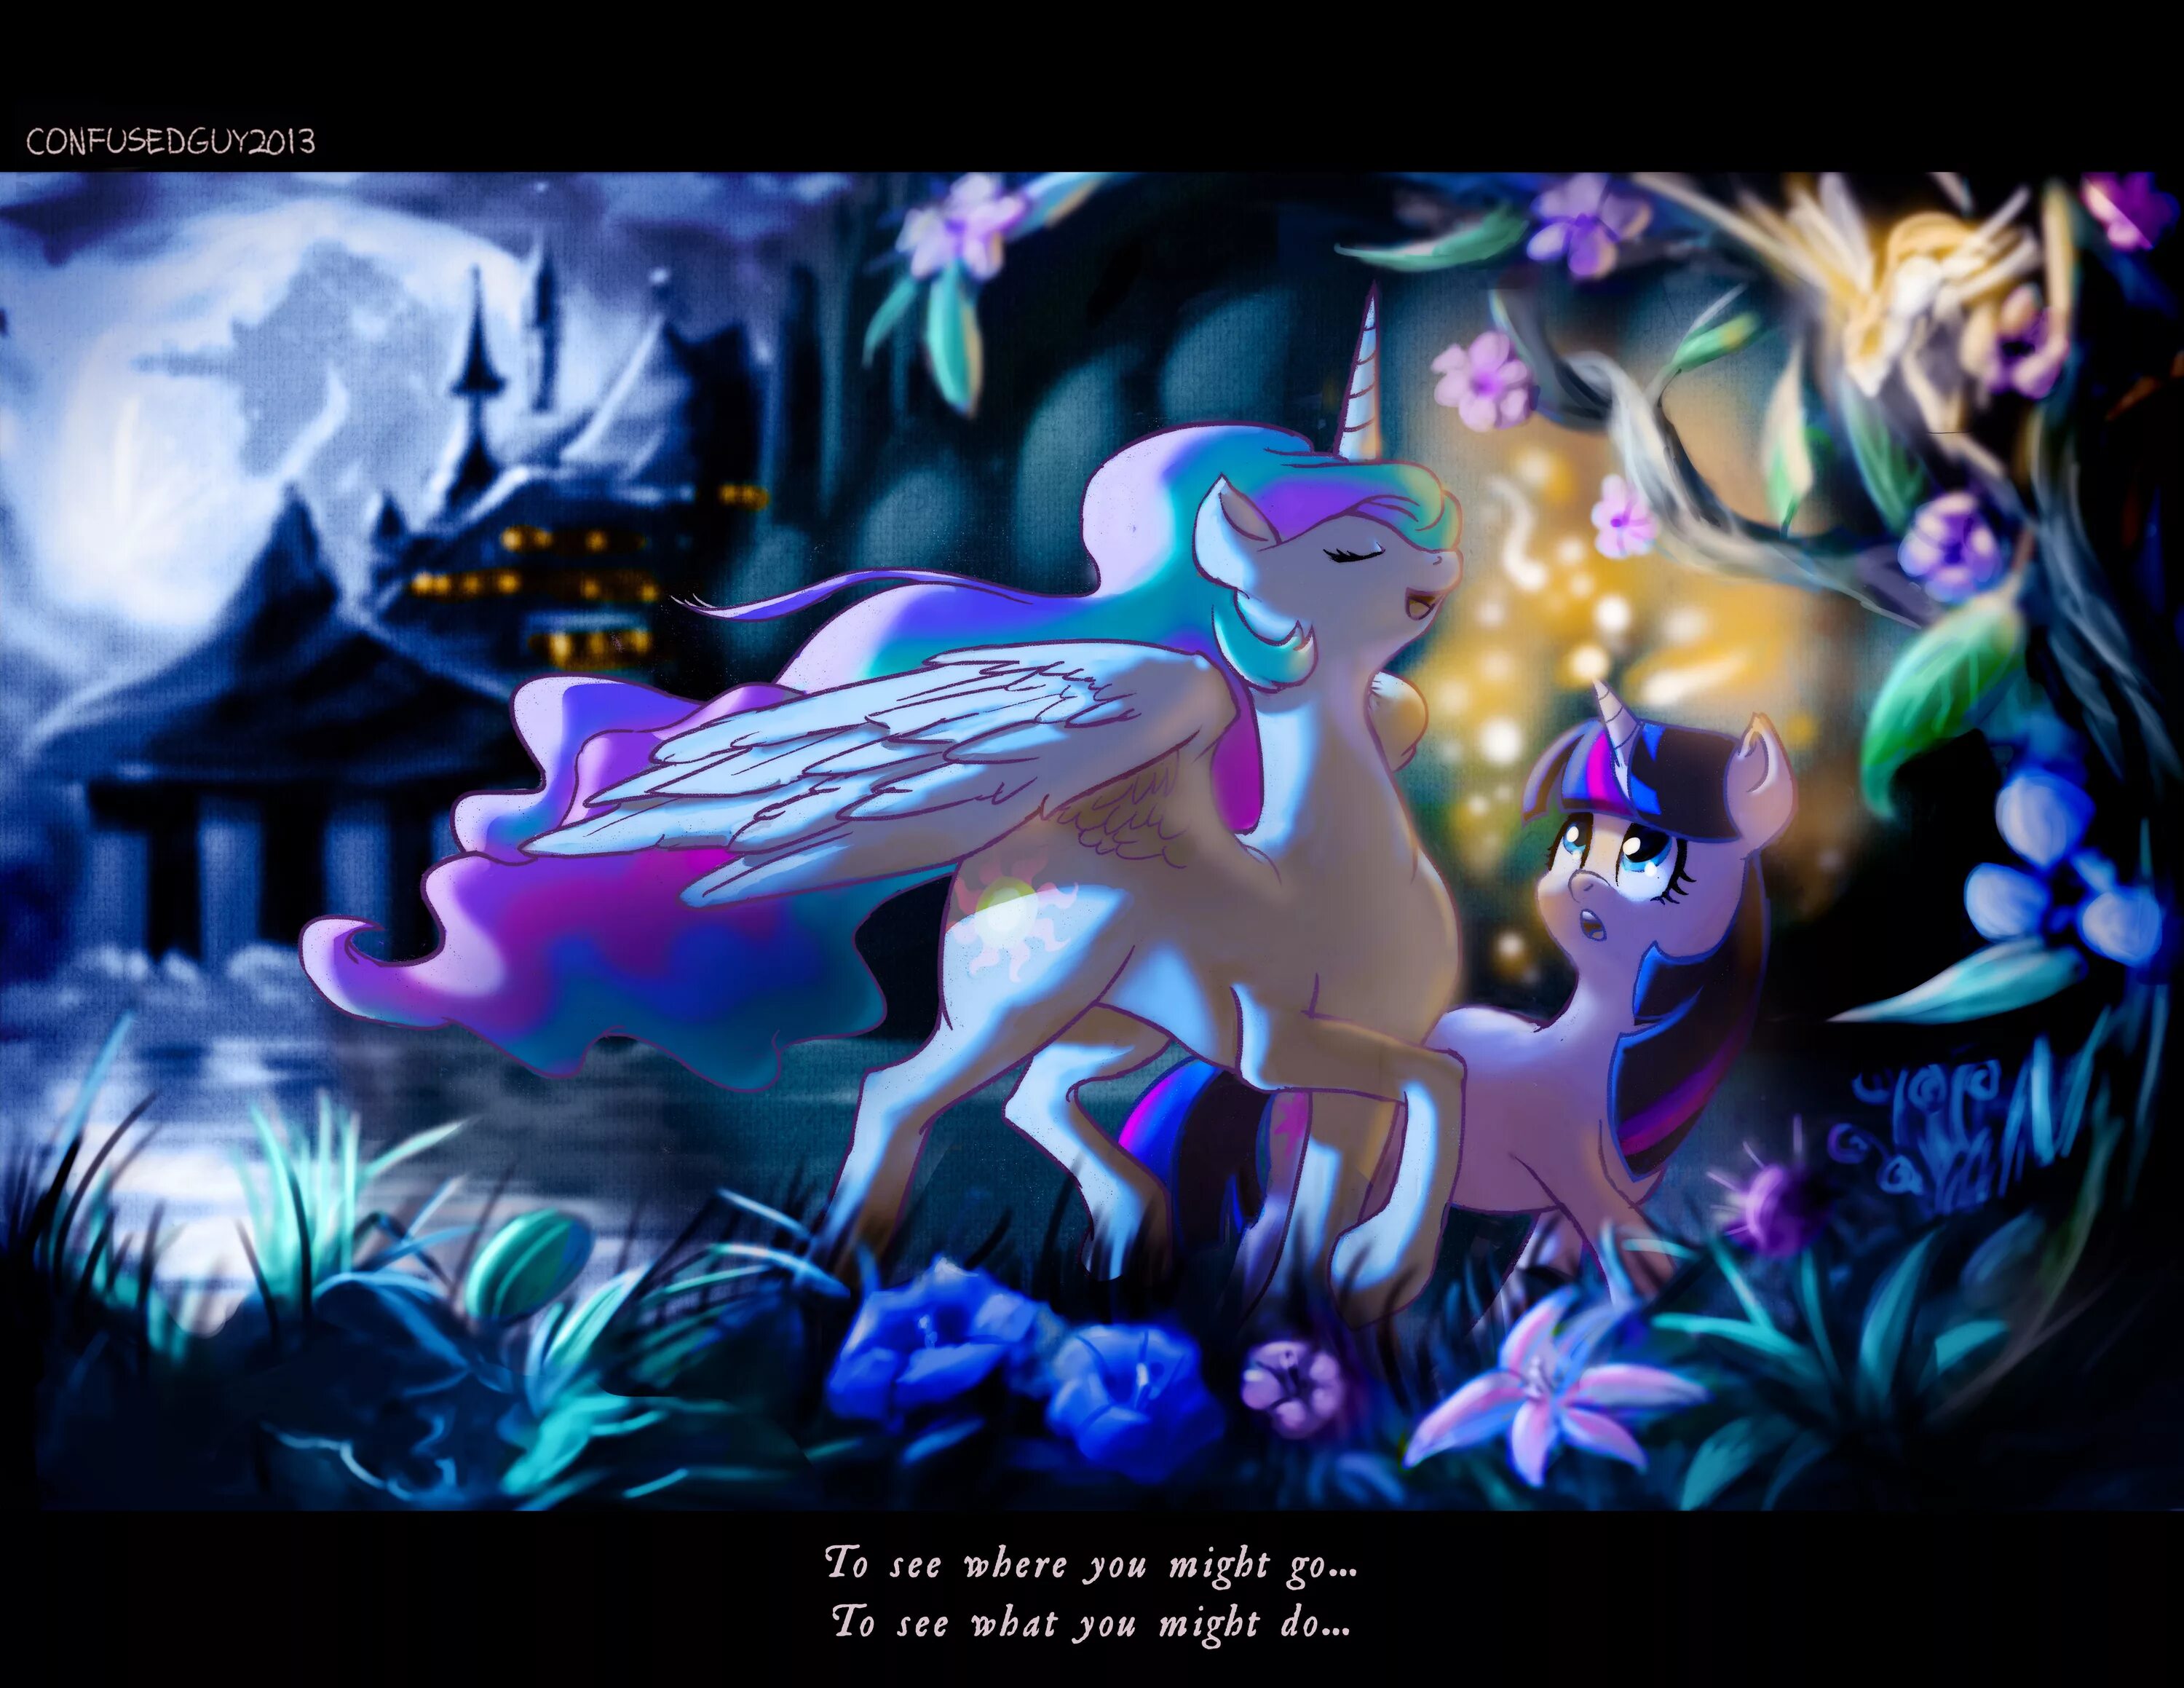 МЛП магия принцесс. My little Pony магия принцесс Кантерлот. МЛП магия принцесс пони. Май Лито пони магич принцесс.